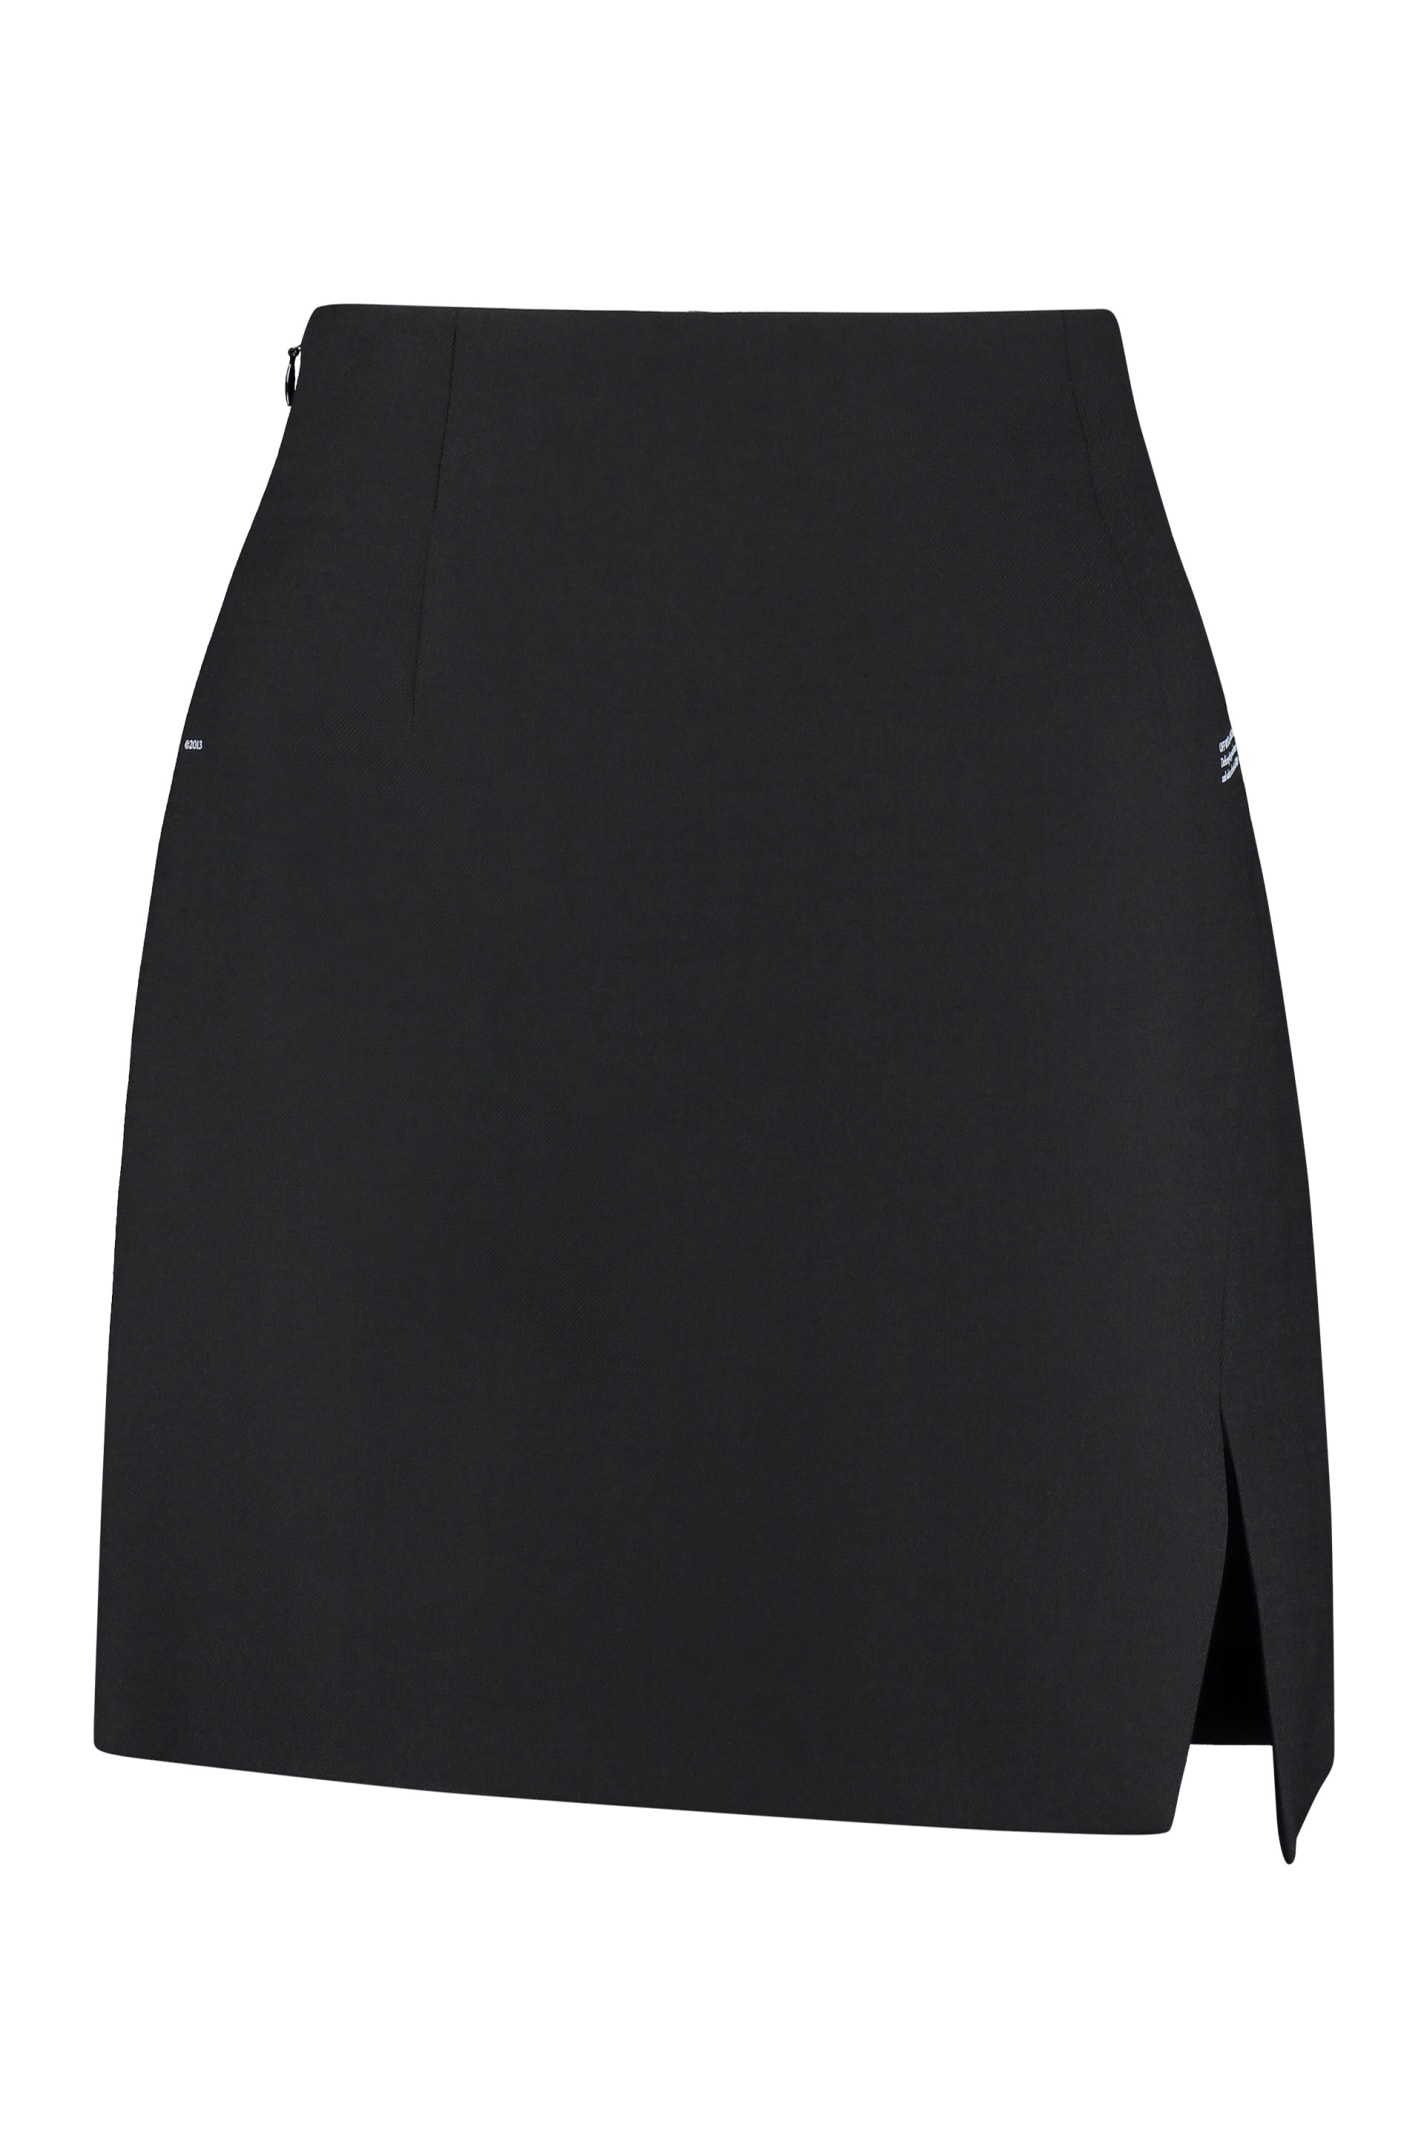 Off-White Wool-blend Mini Skirt